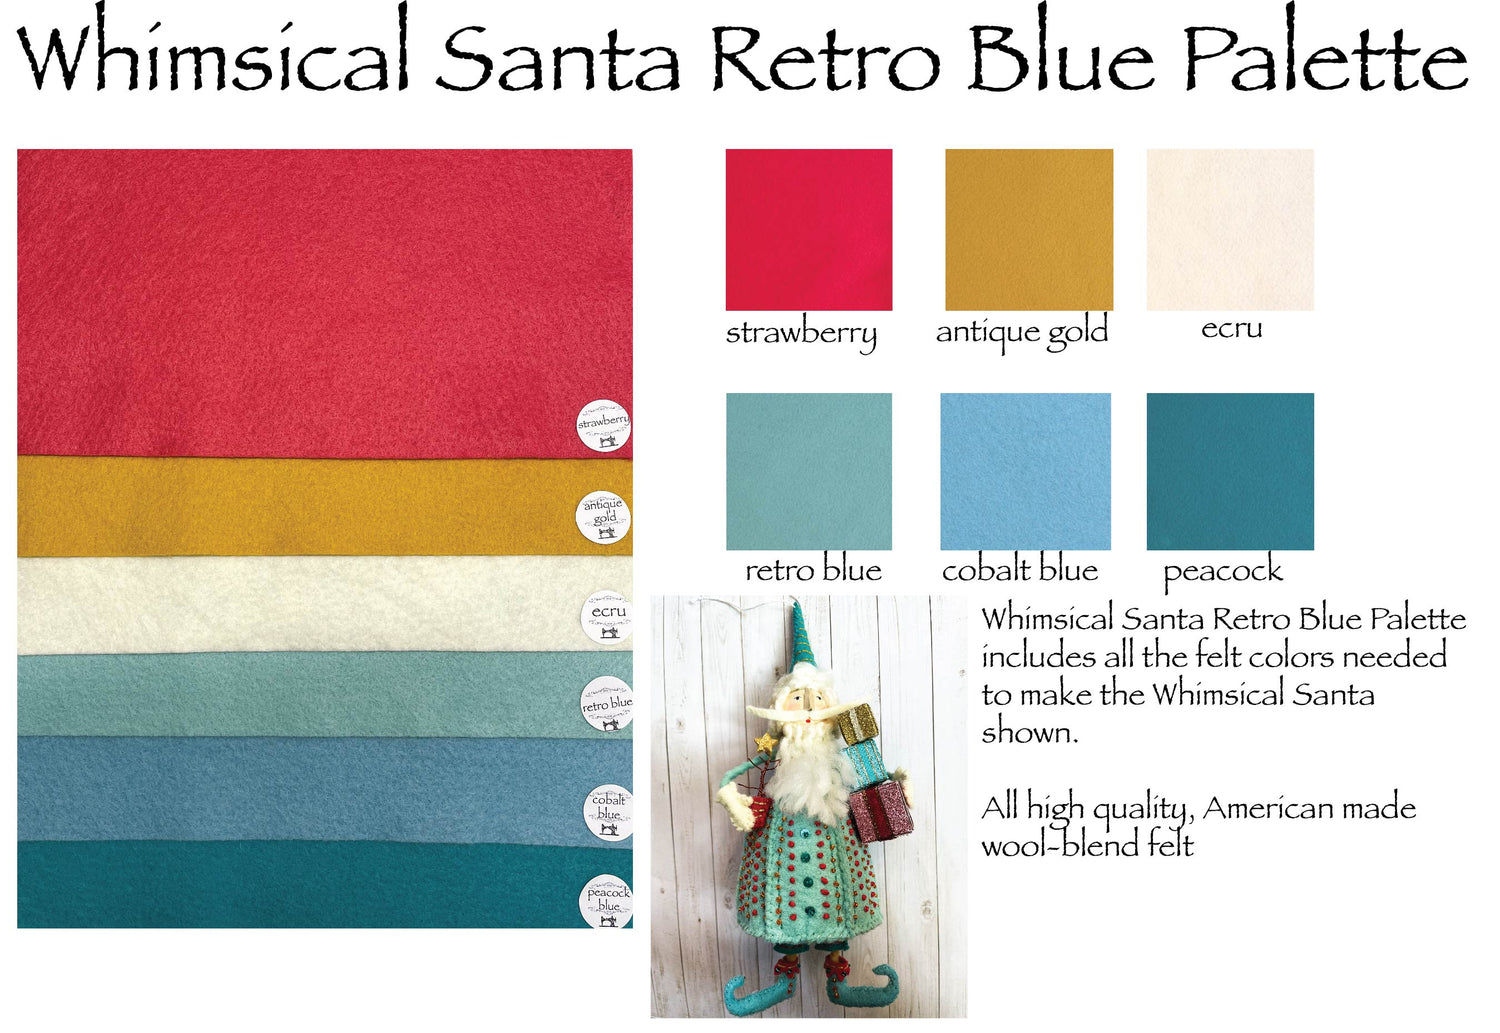 Whimsical Santa Retro Blue Palette Merino Wool Blend Felt Sheets